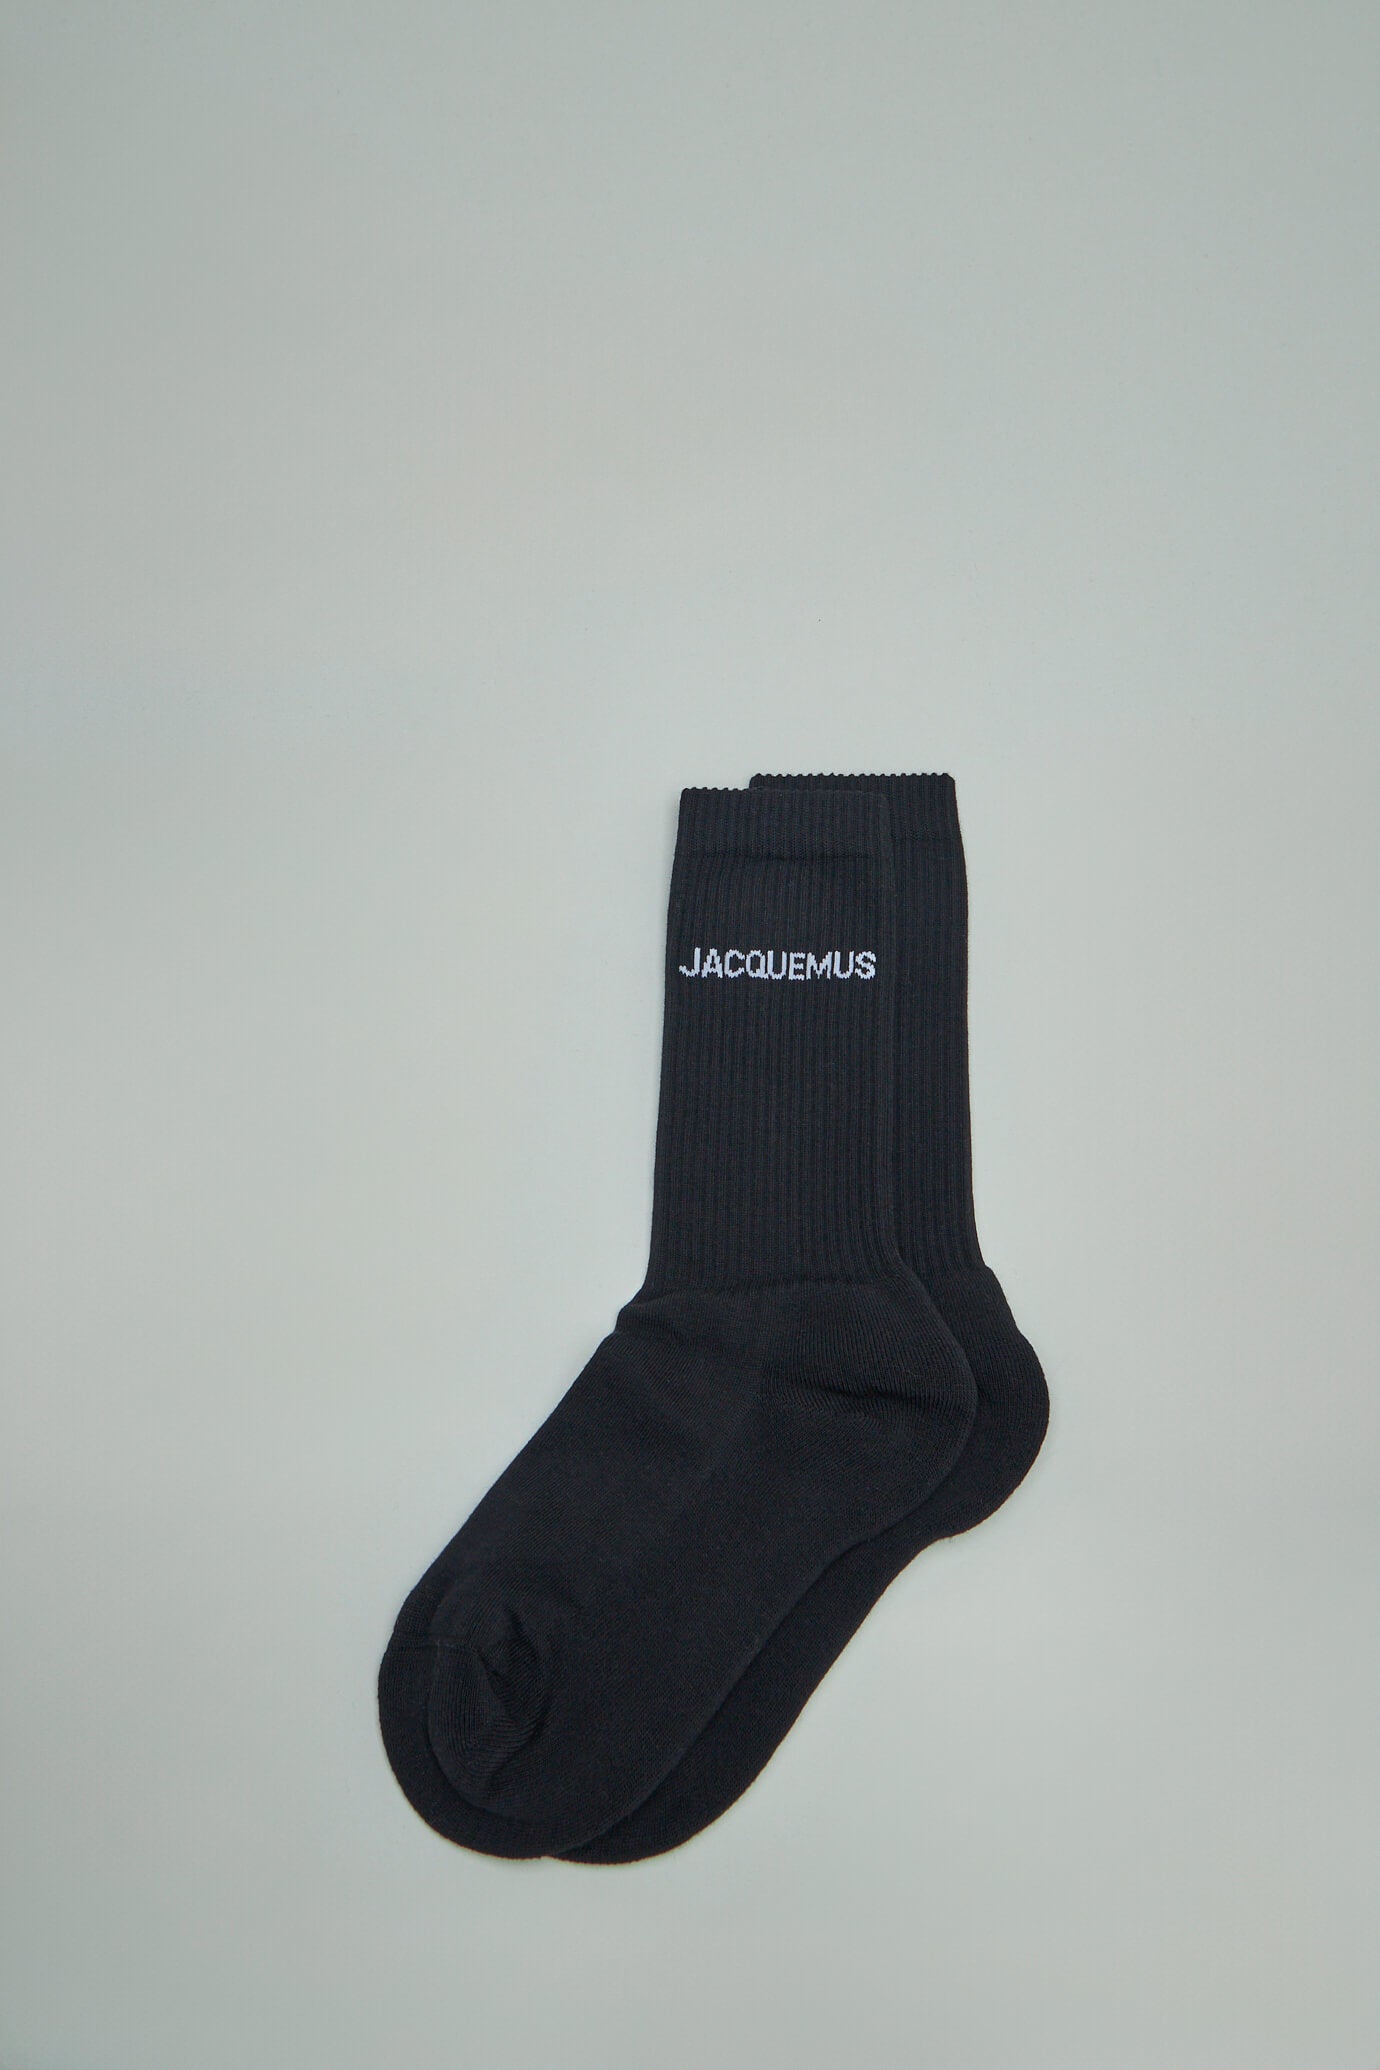 Les chaussettes Jacquemus